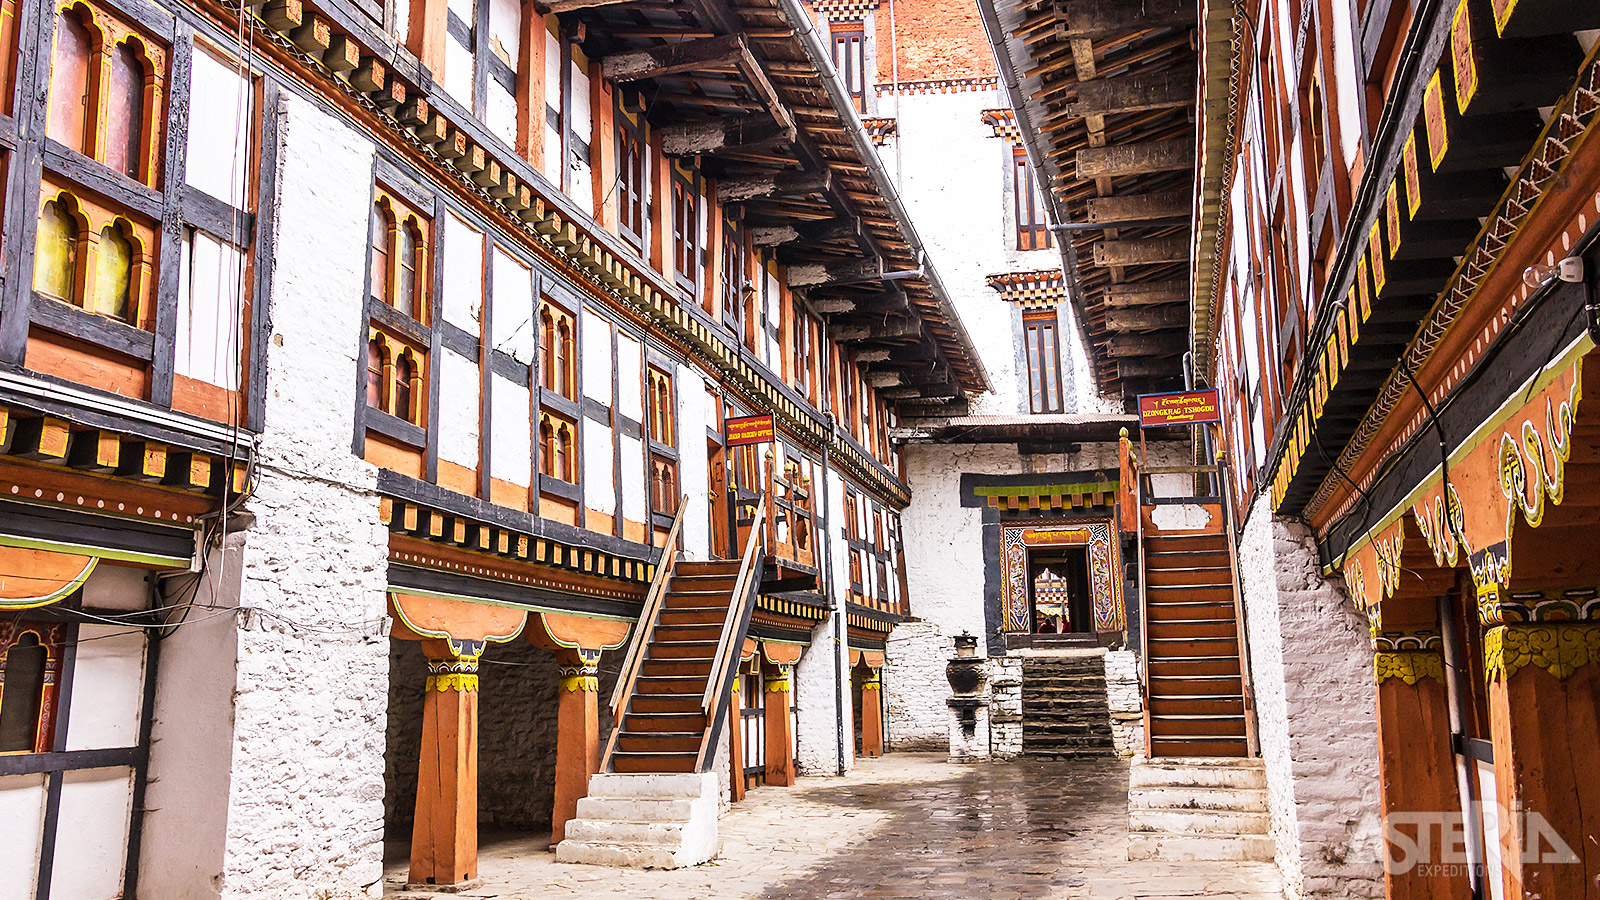 Tegenwoordig is de Jakar Dzong opengesteld voor bezoekers